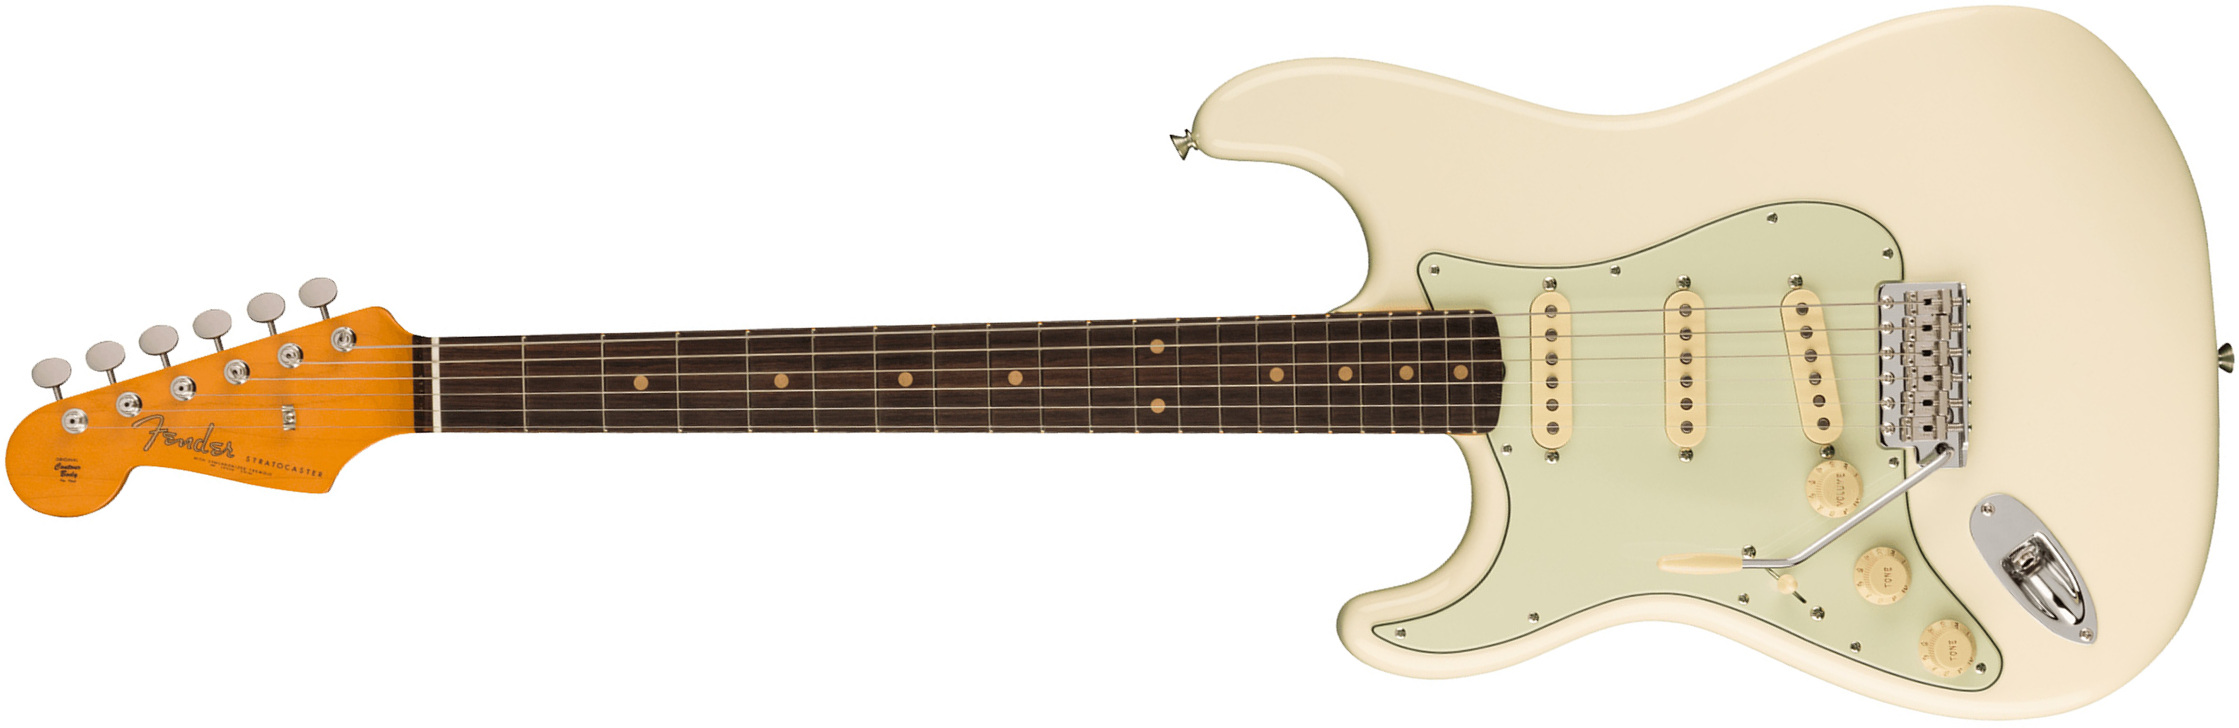 Fender Strat 1961 American Vintage Ii Lh Gaucher Usa 3s Trem Rw - Olympic White - Linkshandige elektrische gitaar - Main picture